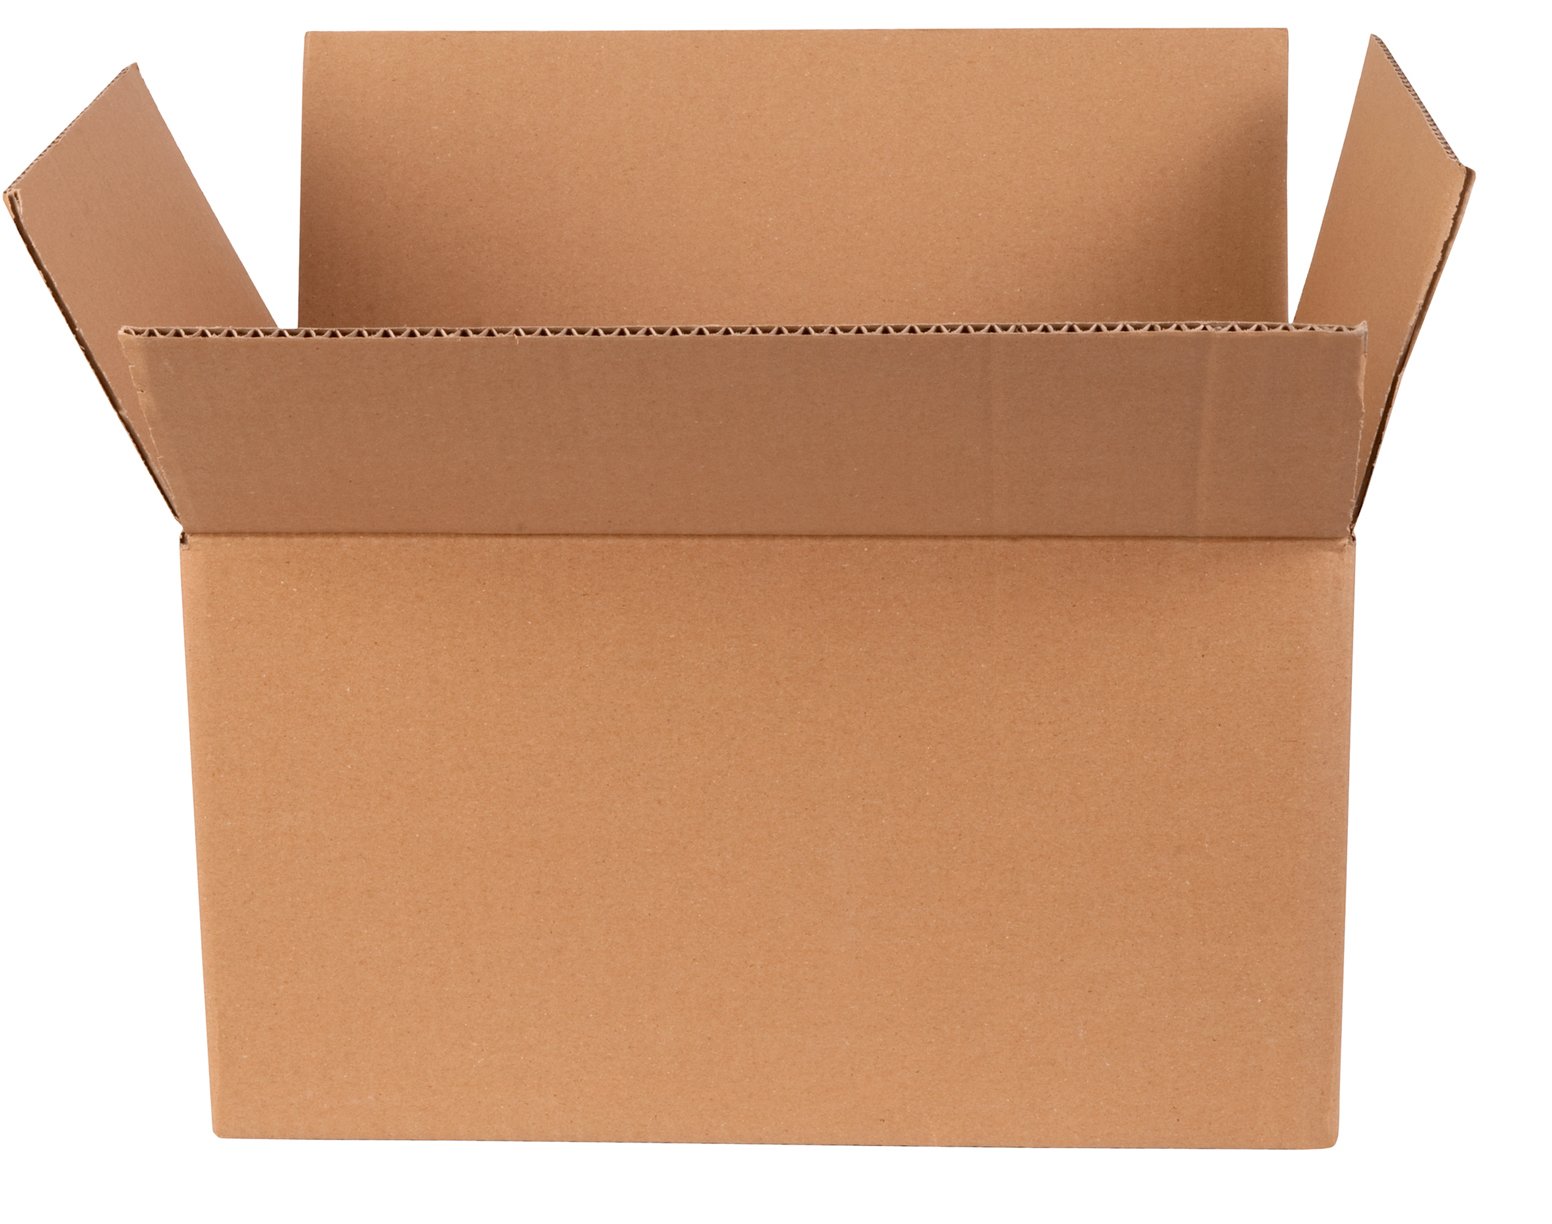 Фото картонной коробки на белом фоне